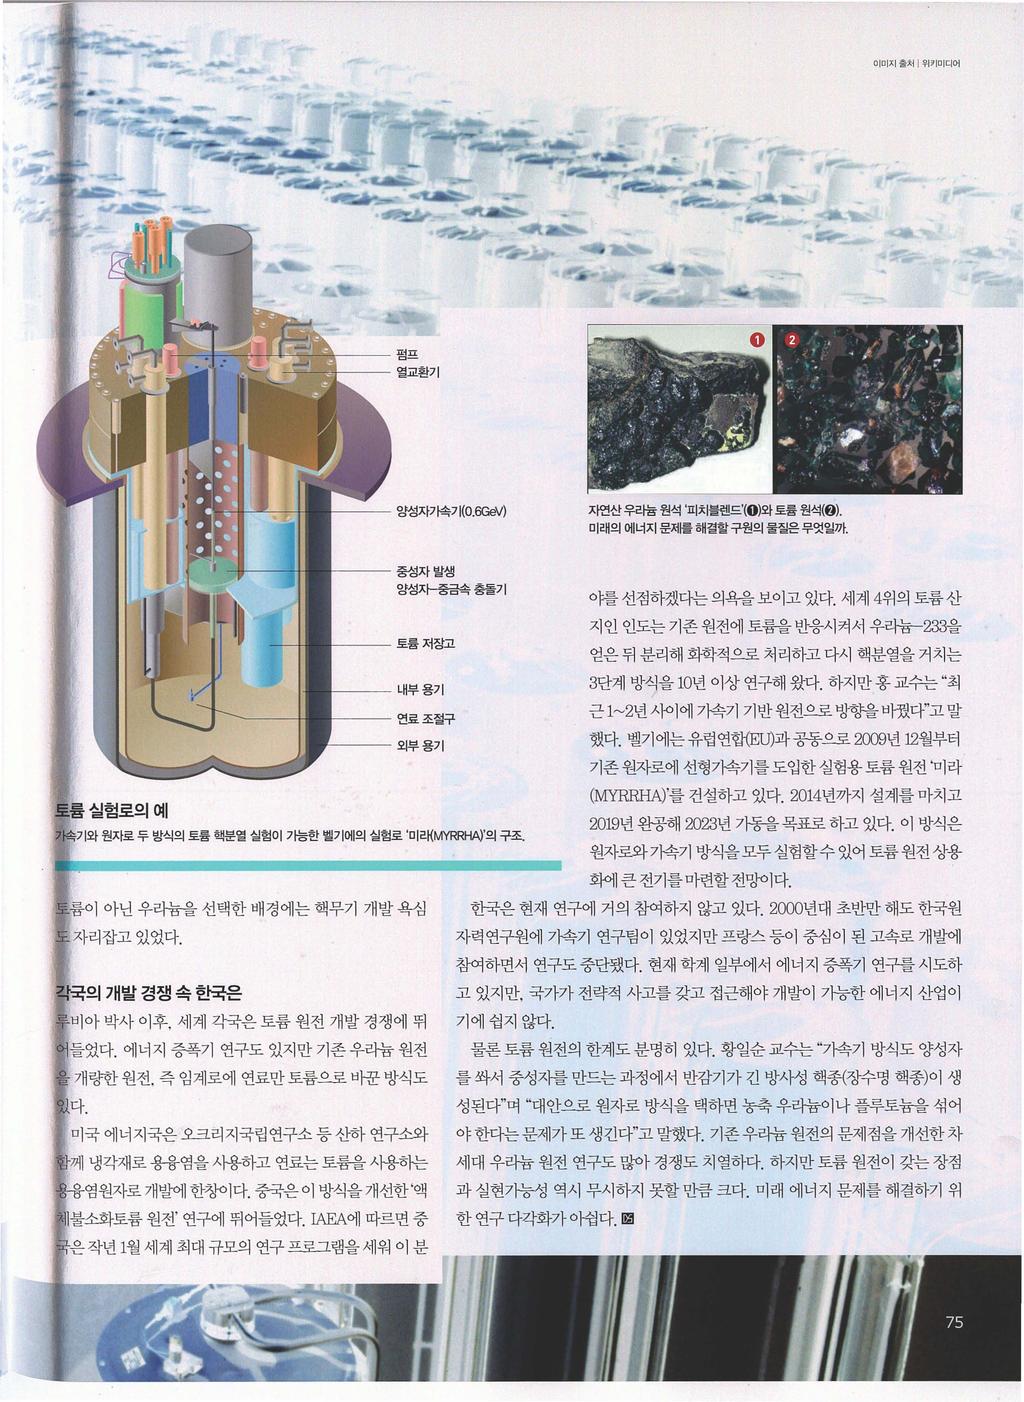 이미지훌처 위키미디어 펌프 열교환기 @ gl 성자가속기 (O.6GeV) 자연산우라늄원석 피치블렌드 (0) 와토륨원석 (0). 미래의에너지문제를해결할구원의물질은무엇일까 토륨실험로의예 중성자발생양성자-중금속충돌기토륨저장고내부용기연료조절구외부용기 자속기와원자로두방식의토륨핵분열실험 01 가능한벨기에의실험로 미래 MYRRHA) 의구조.